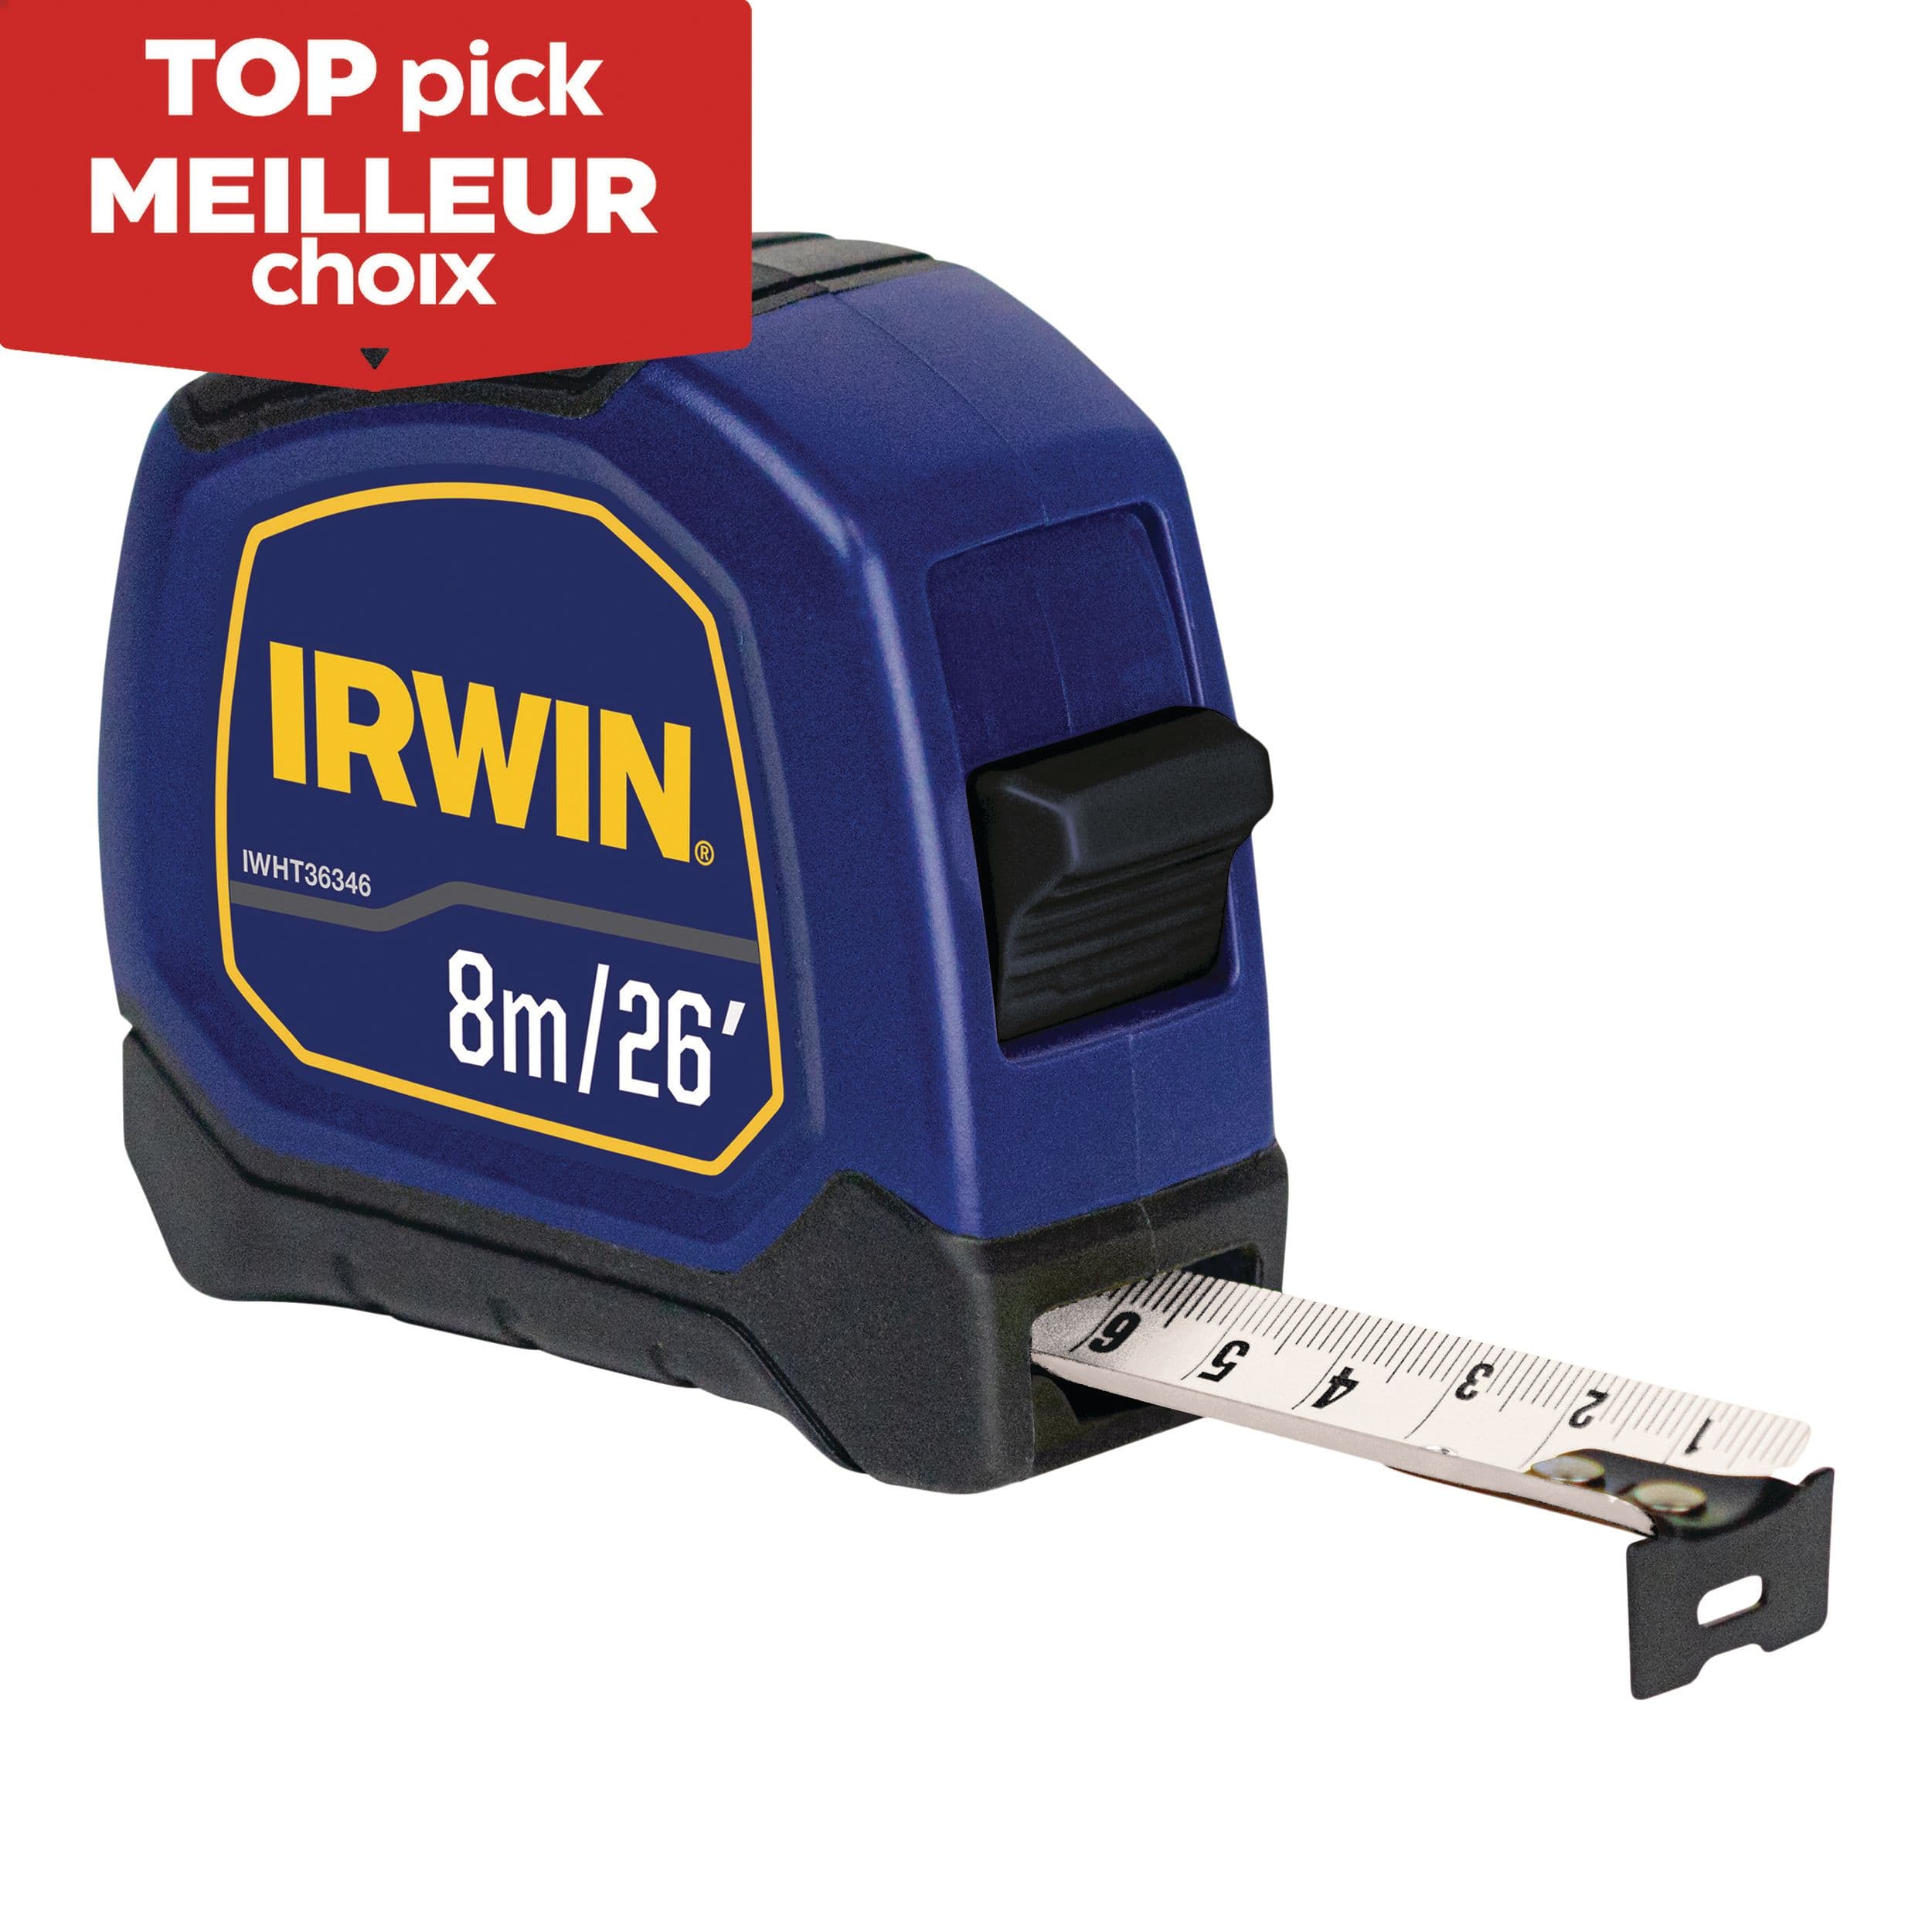 IRWIN IWHT36346 Bi-Material Tape Measure, 26-ft